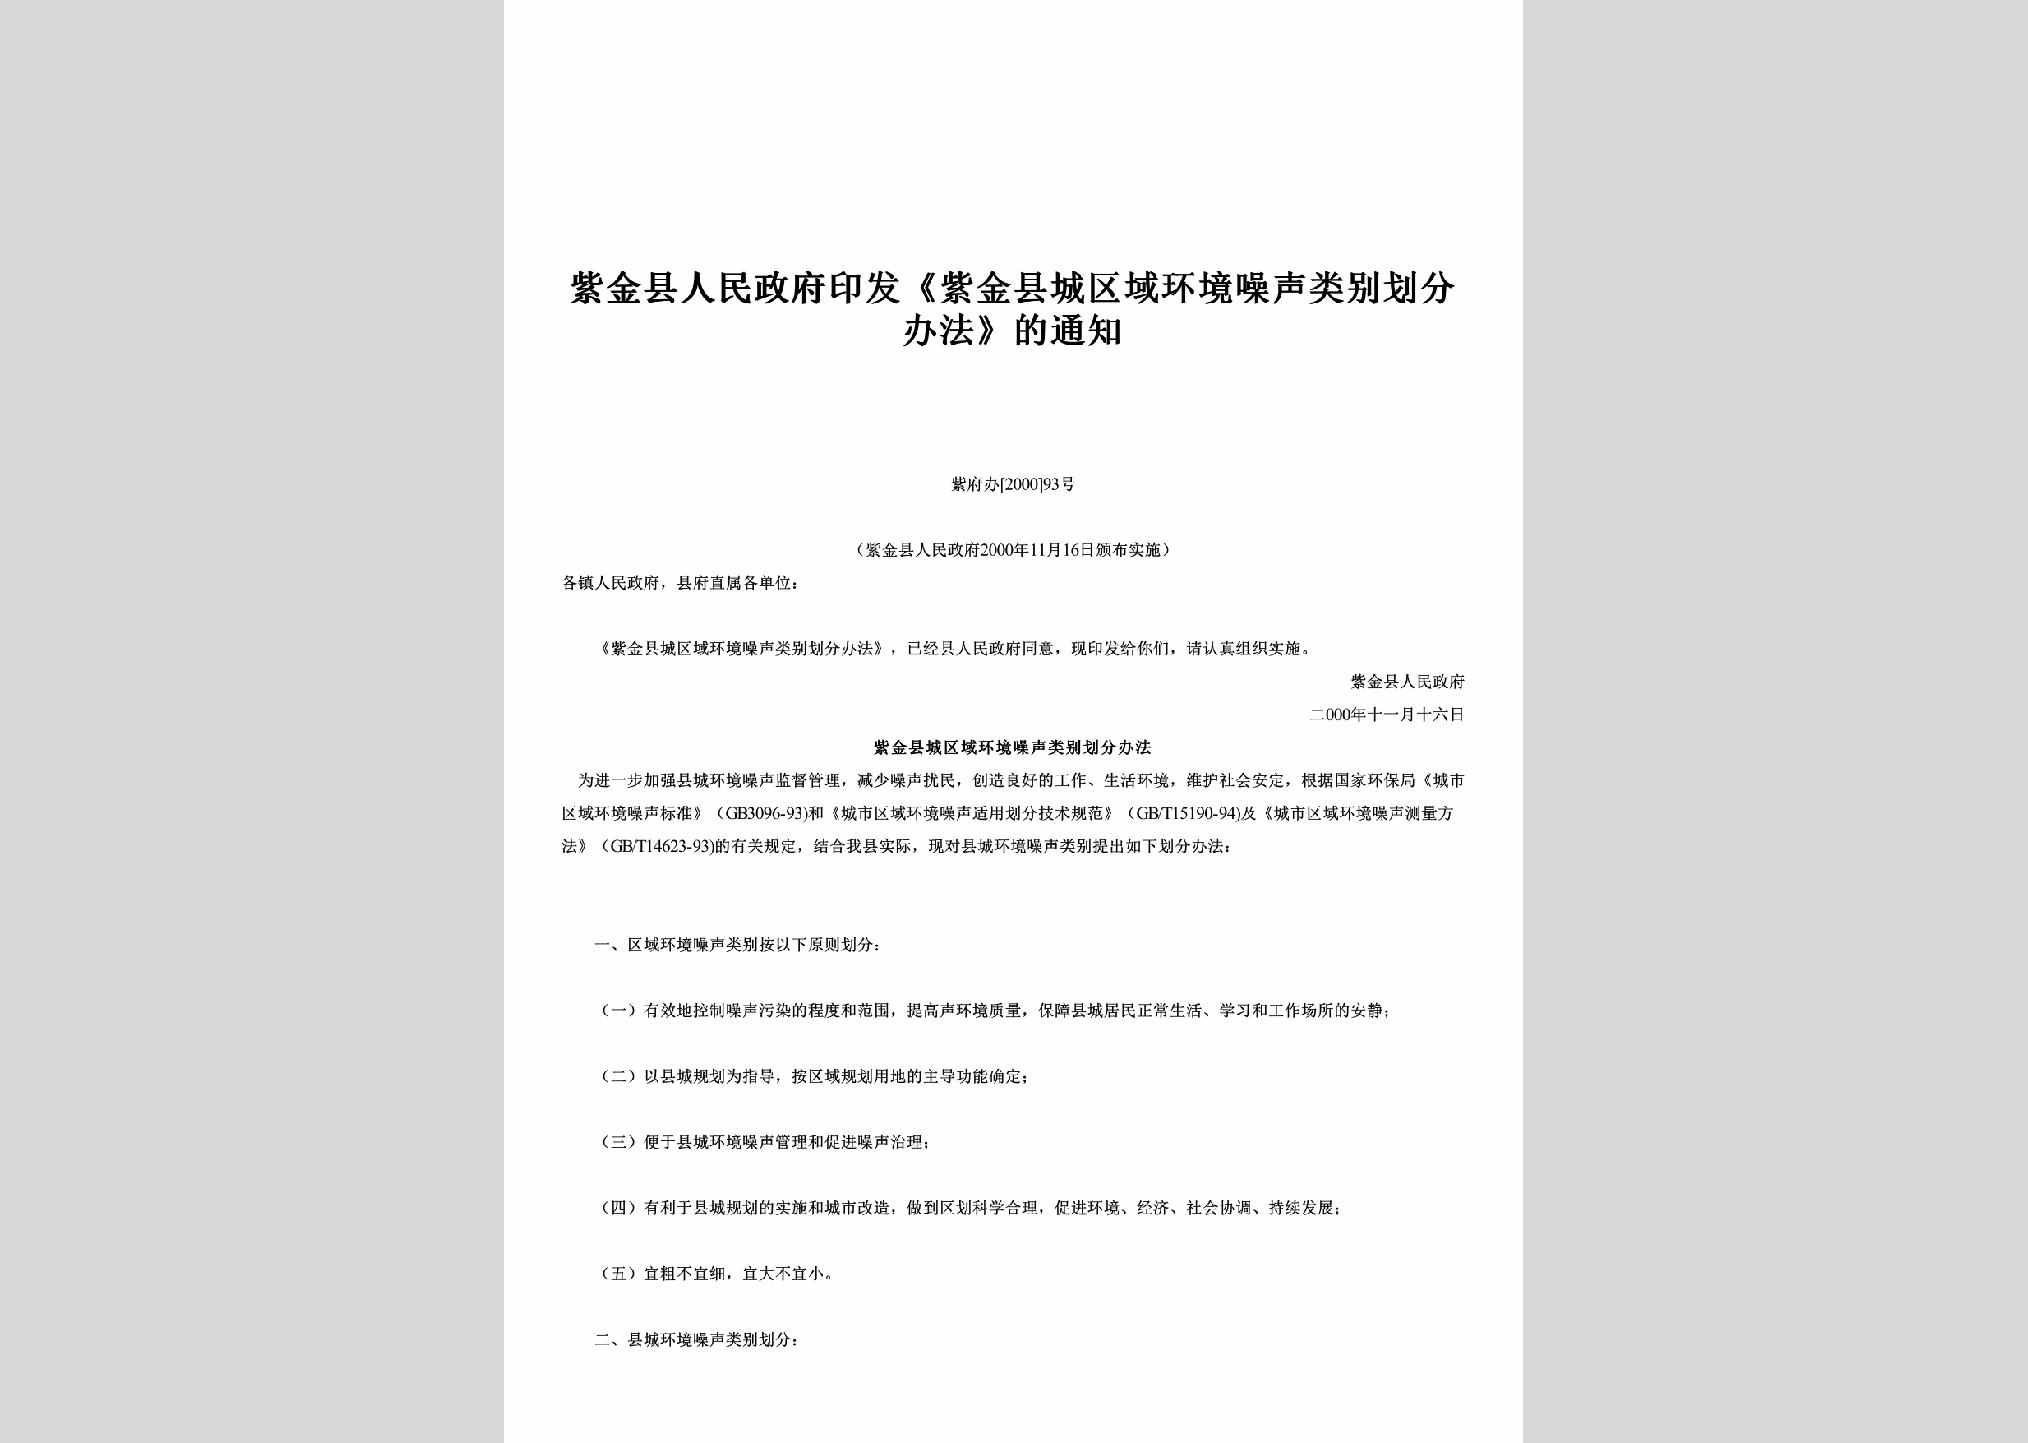 紫府办[2000]93号：印发《紫金县城区域环境噪声类别划分办法》的通知